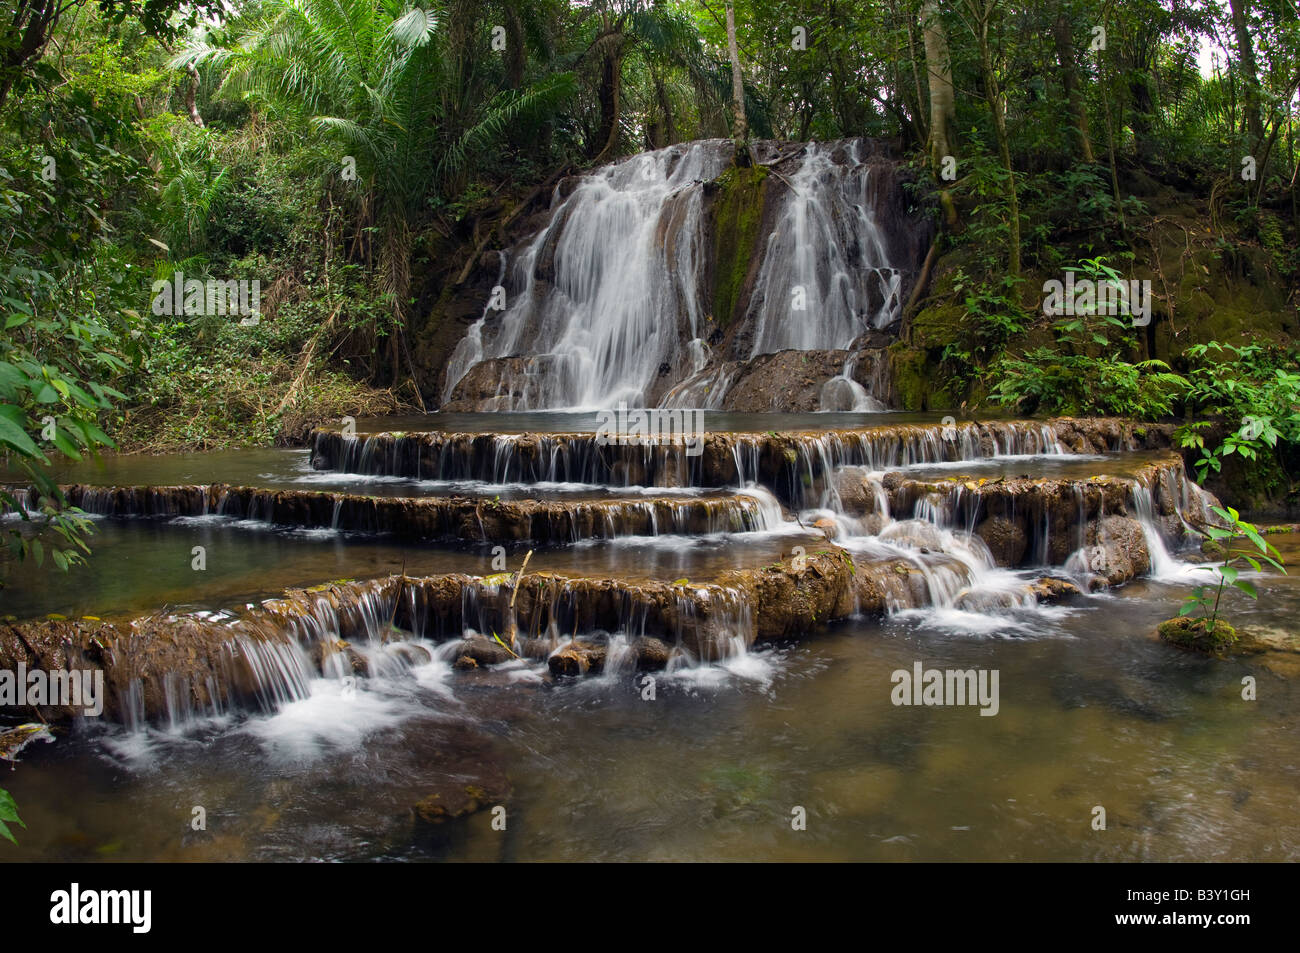 Con cascata nella foresta pluviale tropicale nello stato del Mato Grosso do Sul in Brasile Foto Stock